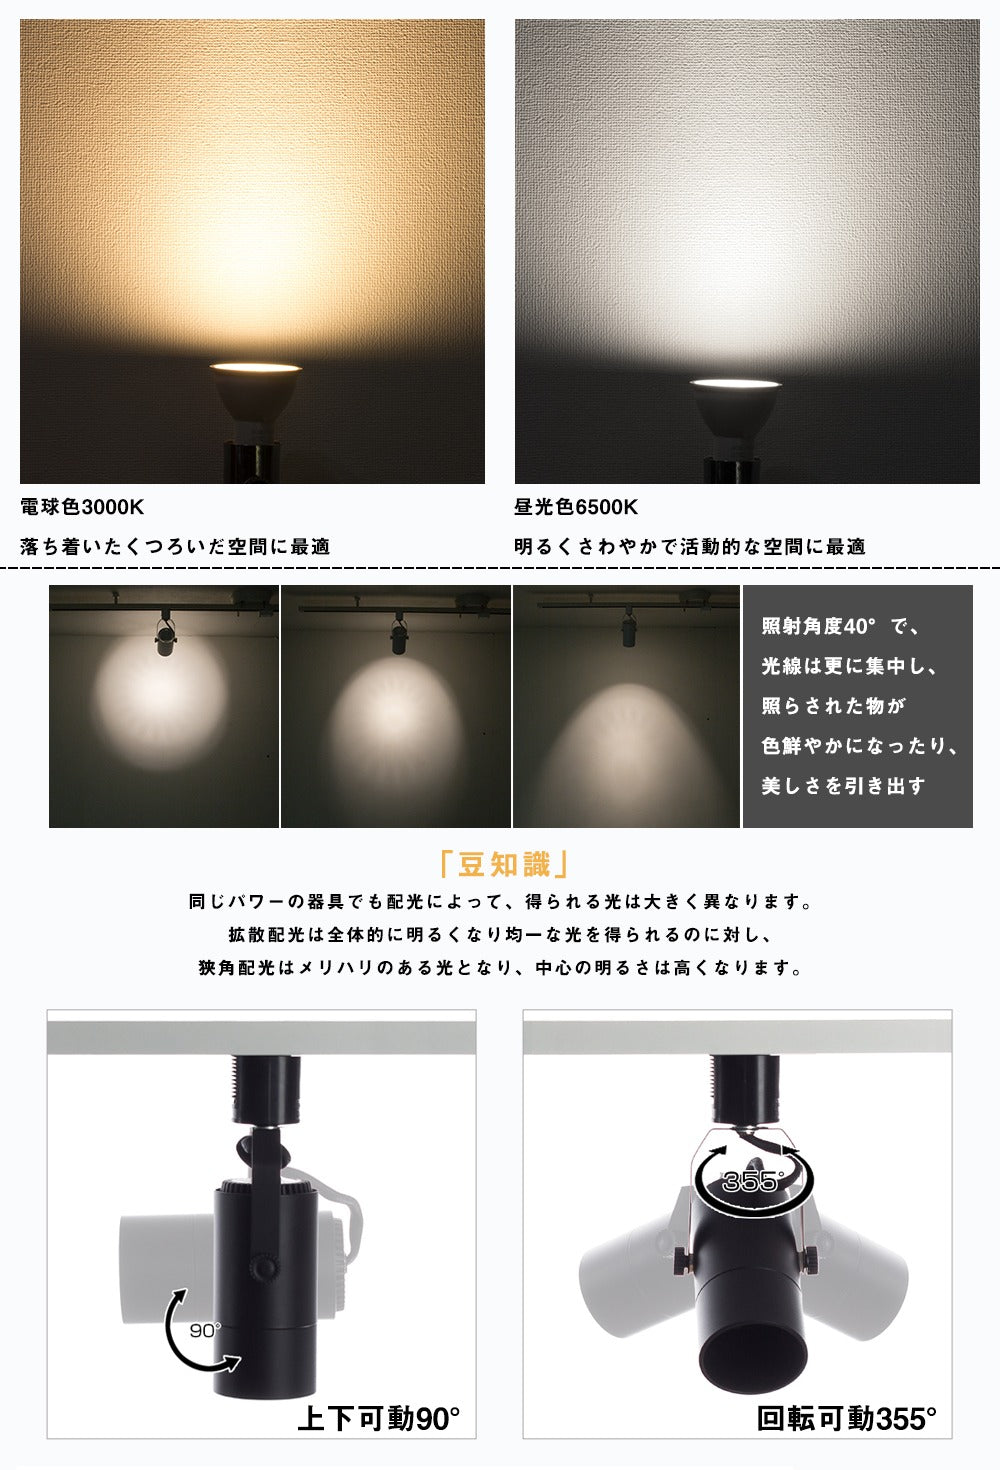 共同照明】50W形 LEDスポットライト E11 ハロゲンランプ 電球色 昼光色